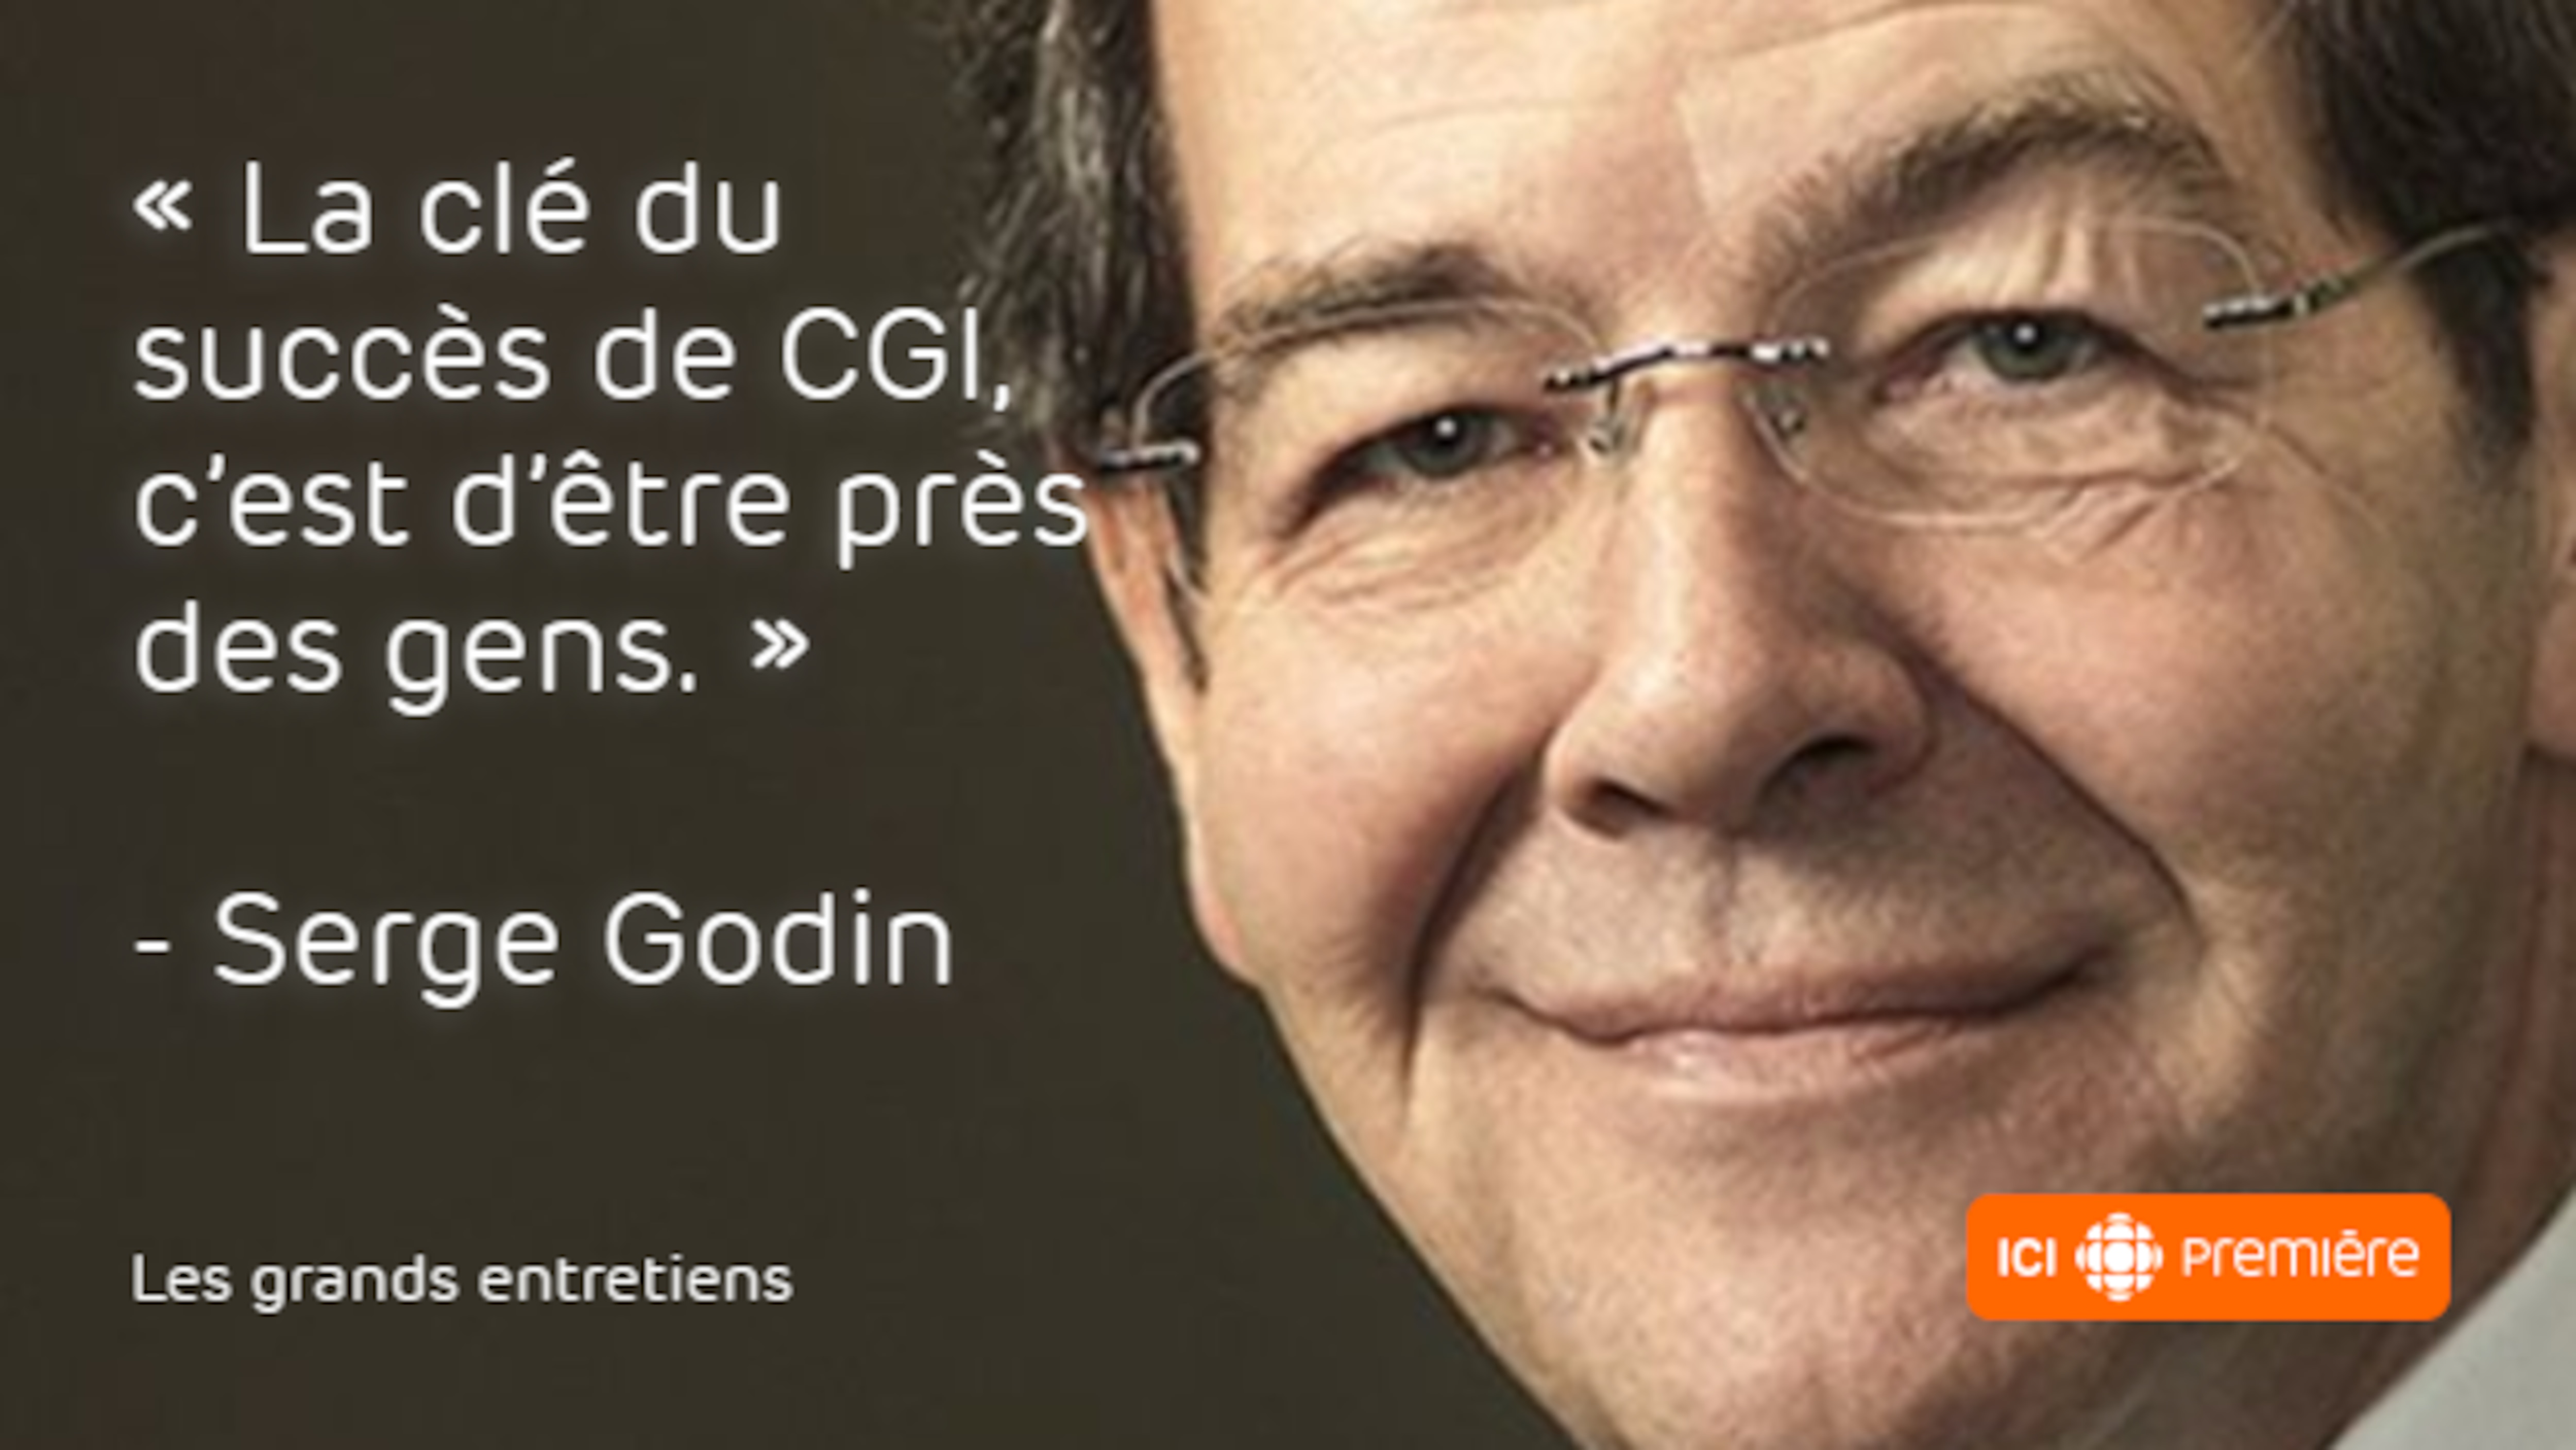 Citation du fondateur et président du conseil de CGI, Serge Godin: « La clé du succès de CGI, c'est d'être près des gens. »